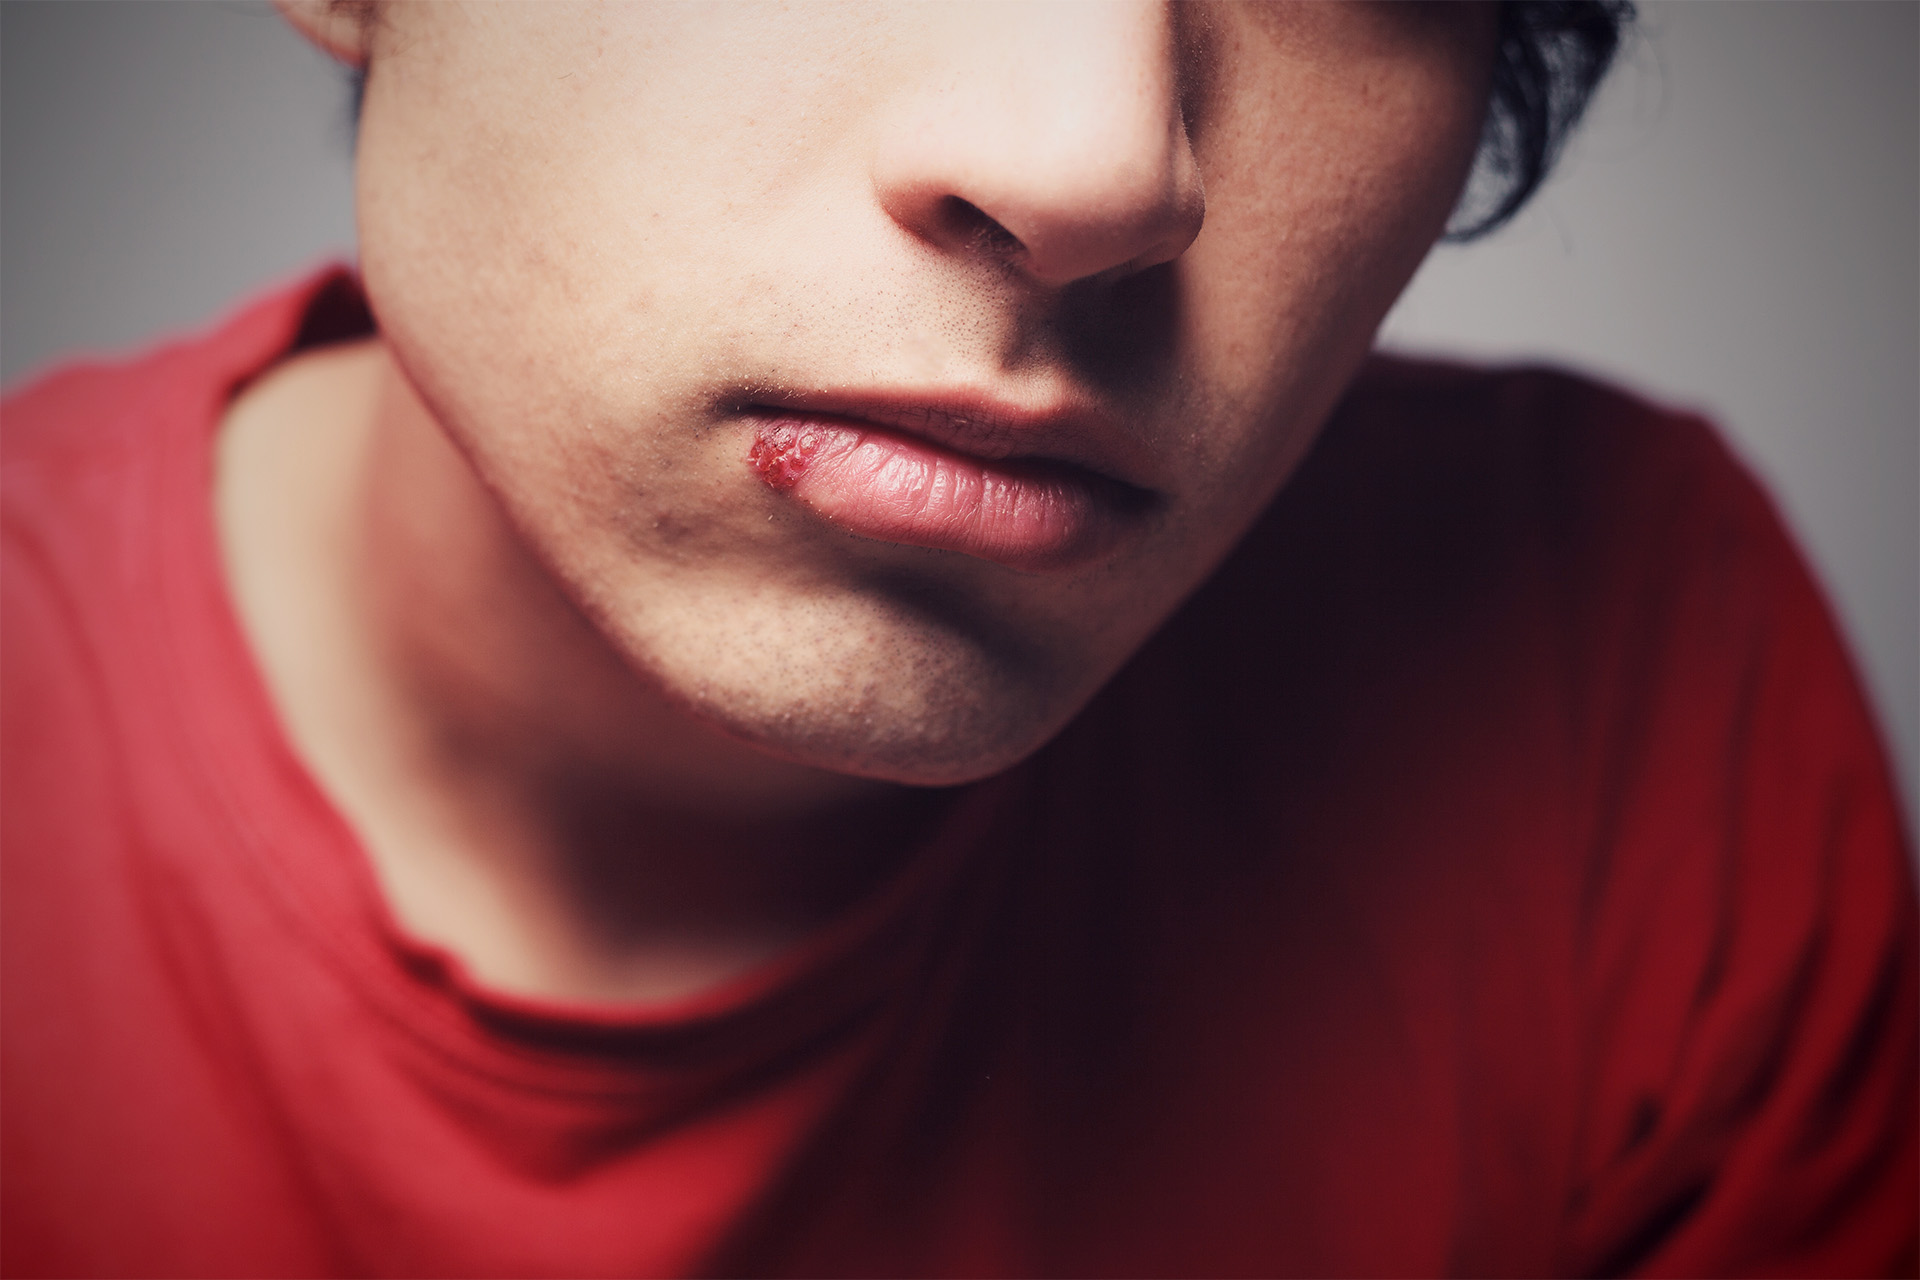 Mund und Lippen: Unsere erste Immunbarriere